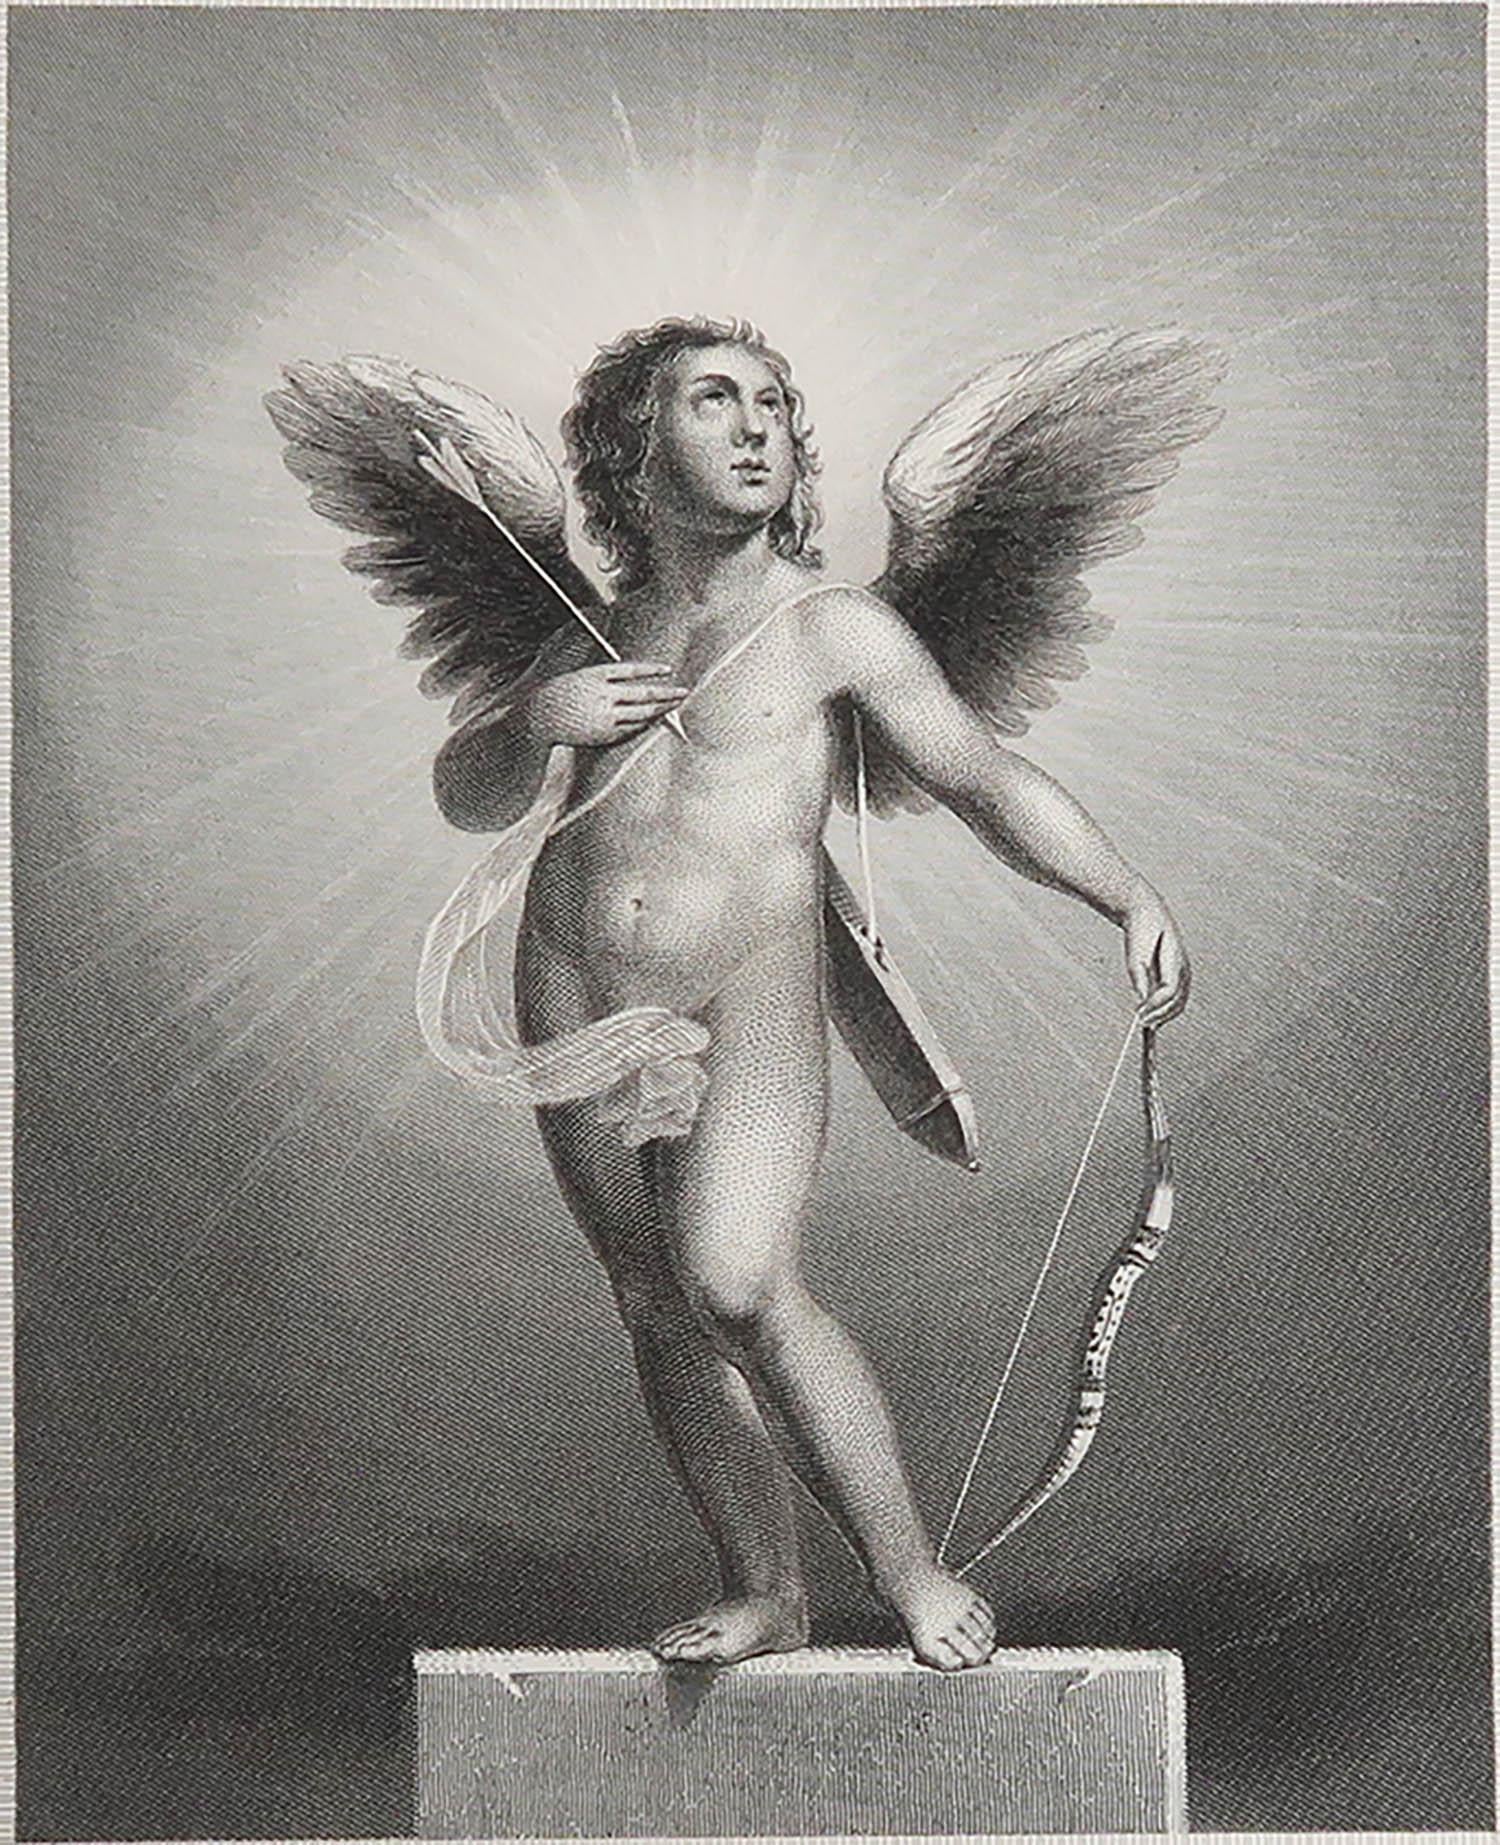 Magnifique image de cupidon

Gravure sur acier d'après E.Steele

Publié A.C.C.

Non encadré.

La mesure indiquée correspond au format du papier

